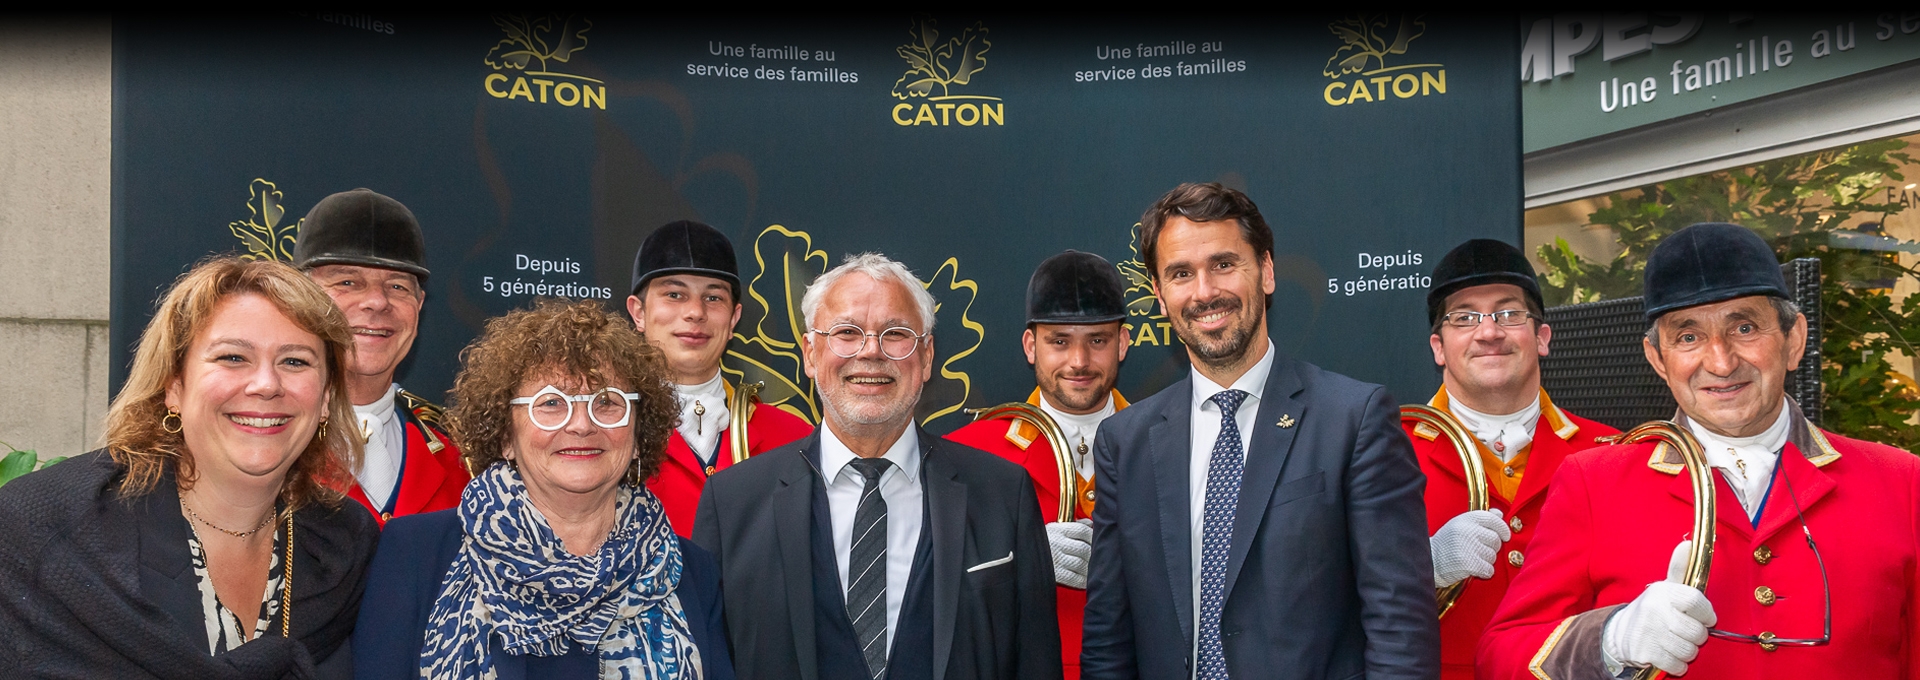 Une nouvelle agence Caton au service des familles de l’ouest parisien et des confrères en région